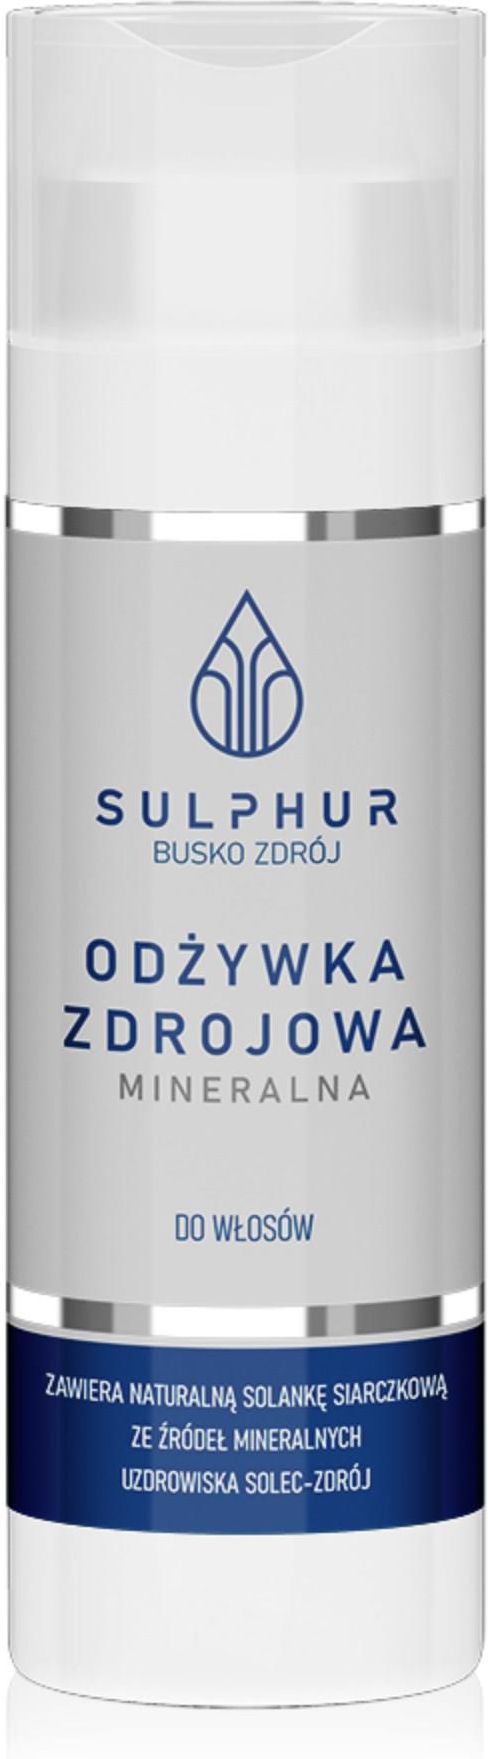 sulphur mineralna odżywka do włosów zdrojowa 200 ml